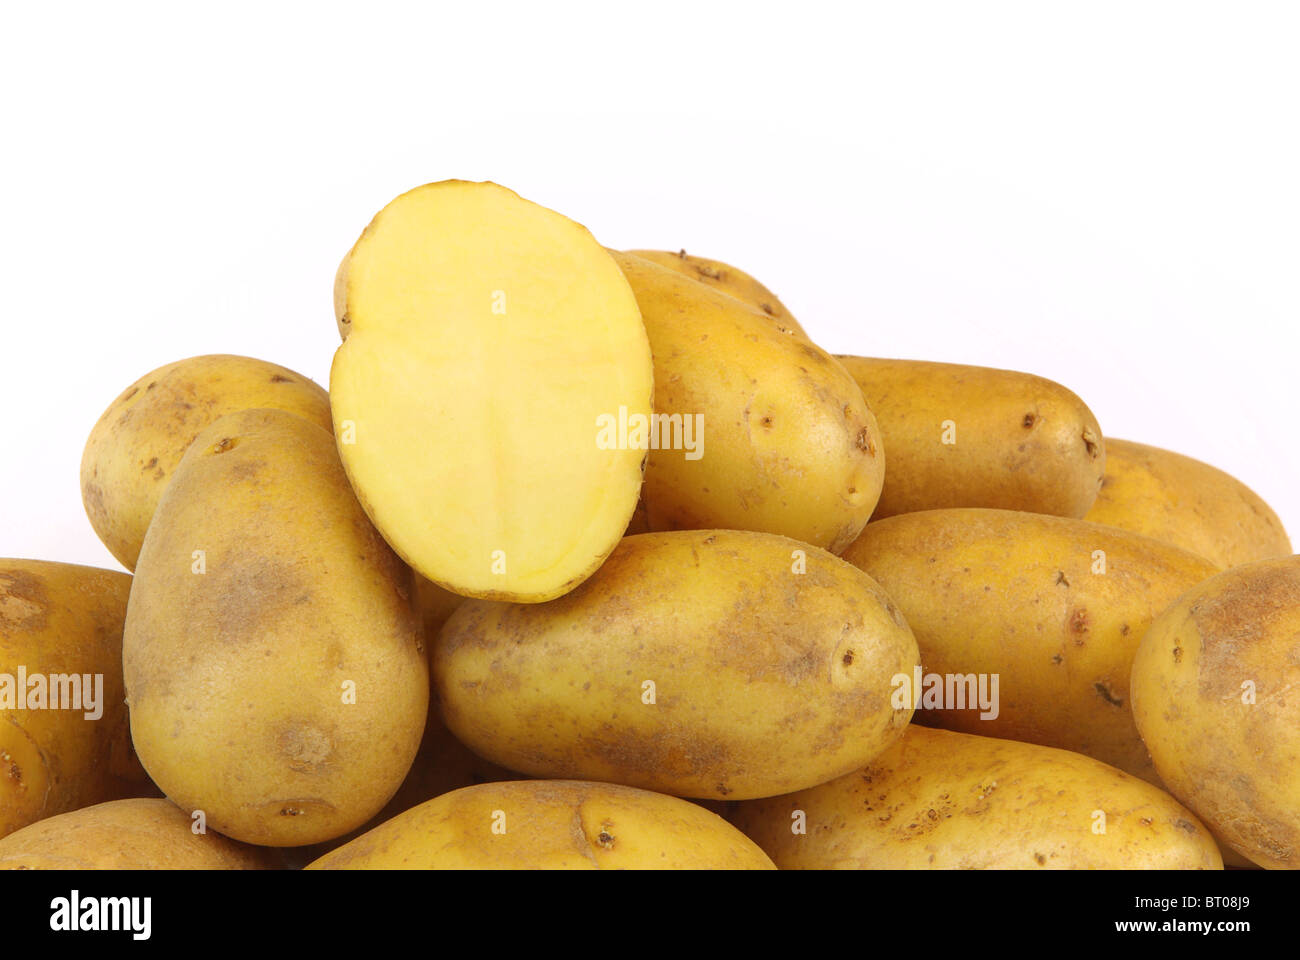 Kartoffel - Kartoffel 09 Stockfoto